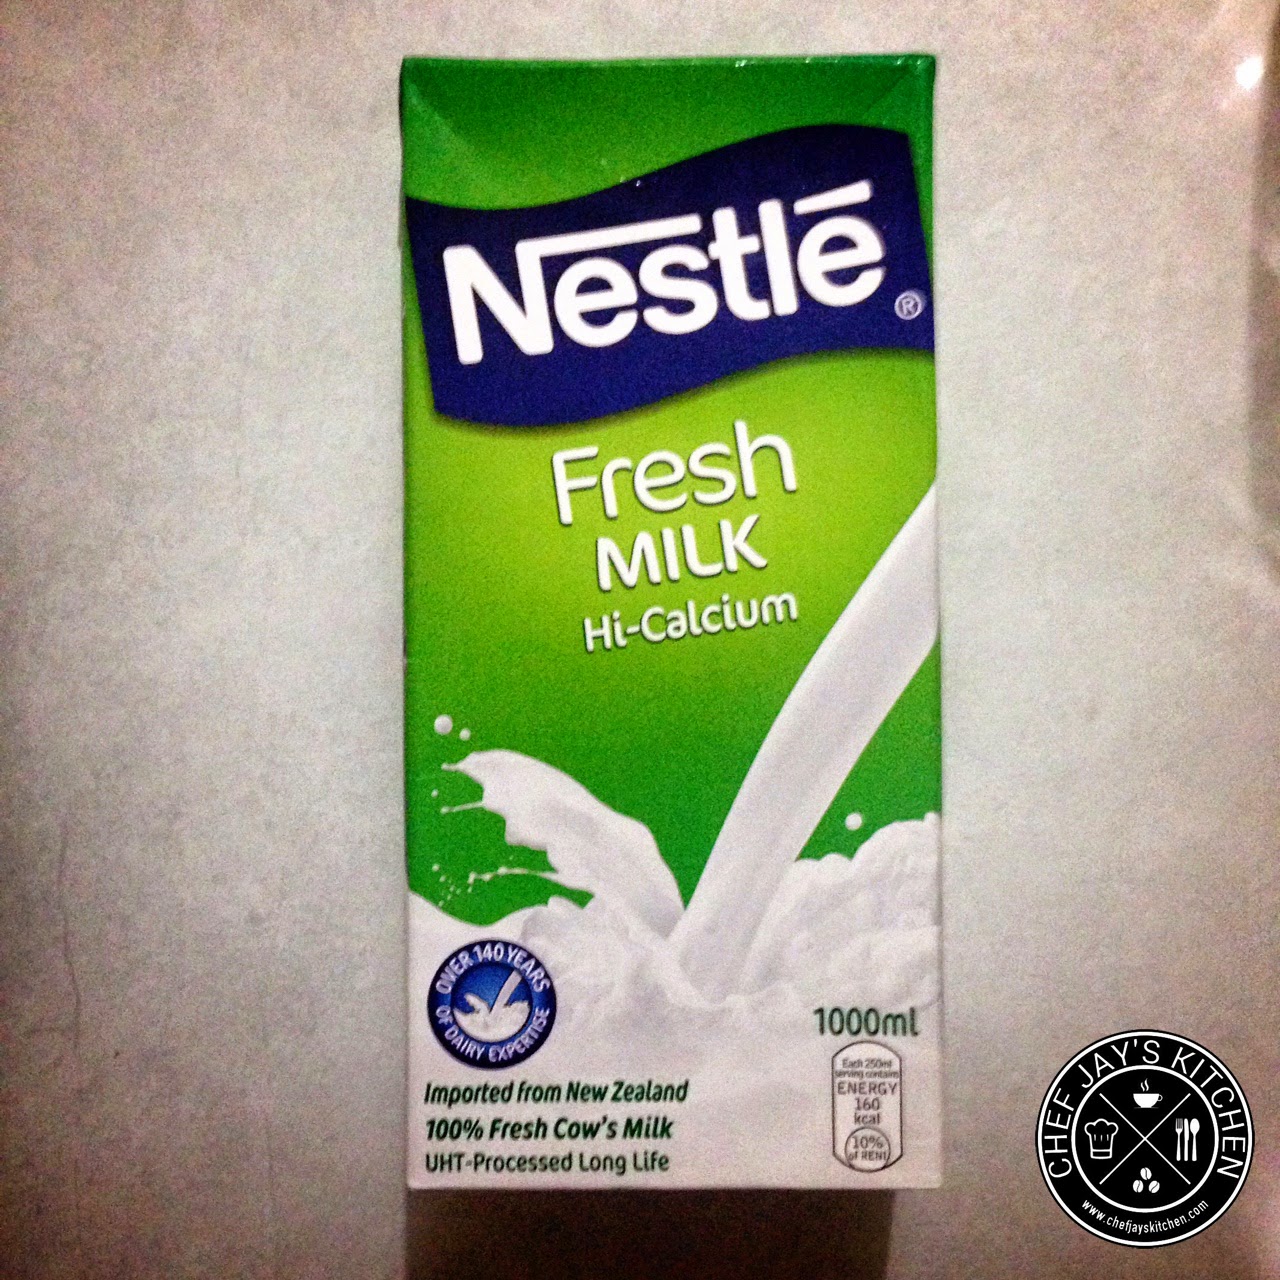 The Best Tasting Supermarket Fresh Milk - Nestle Fresh Milk